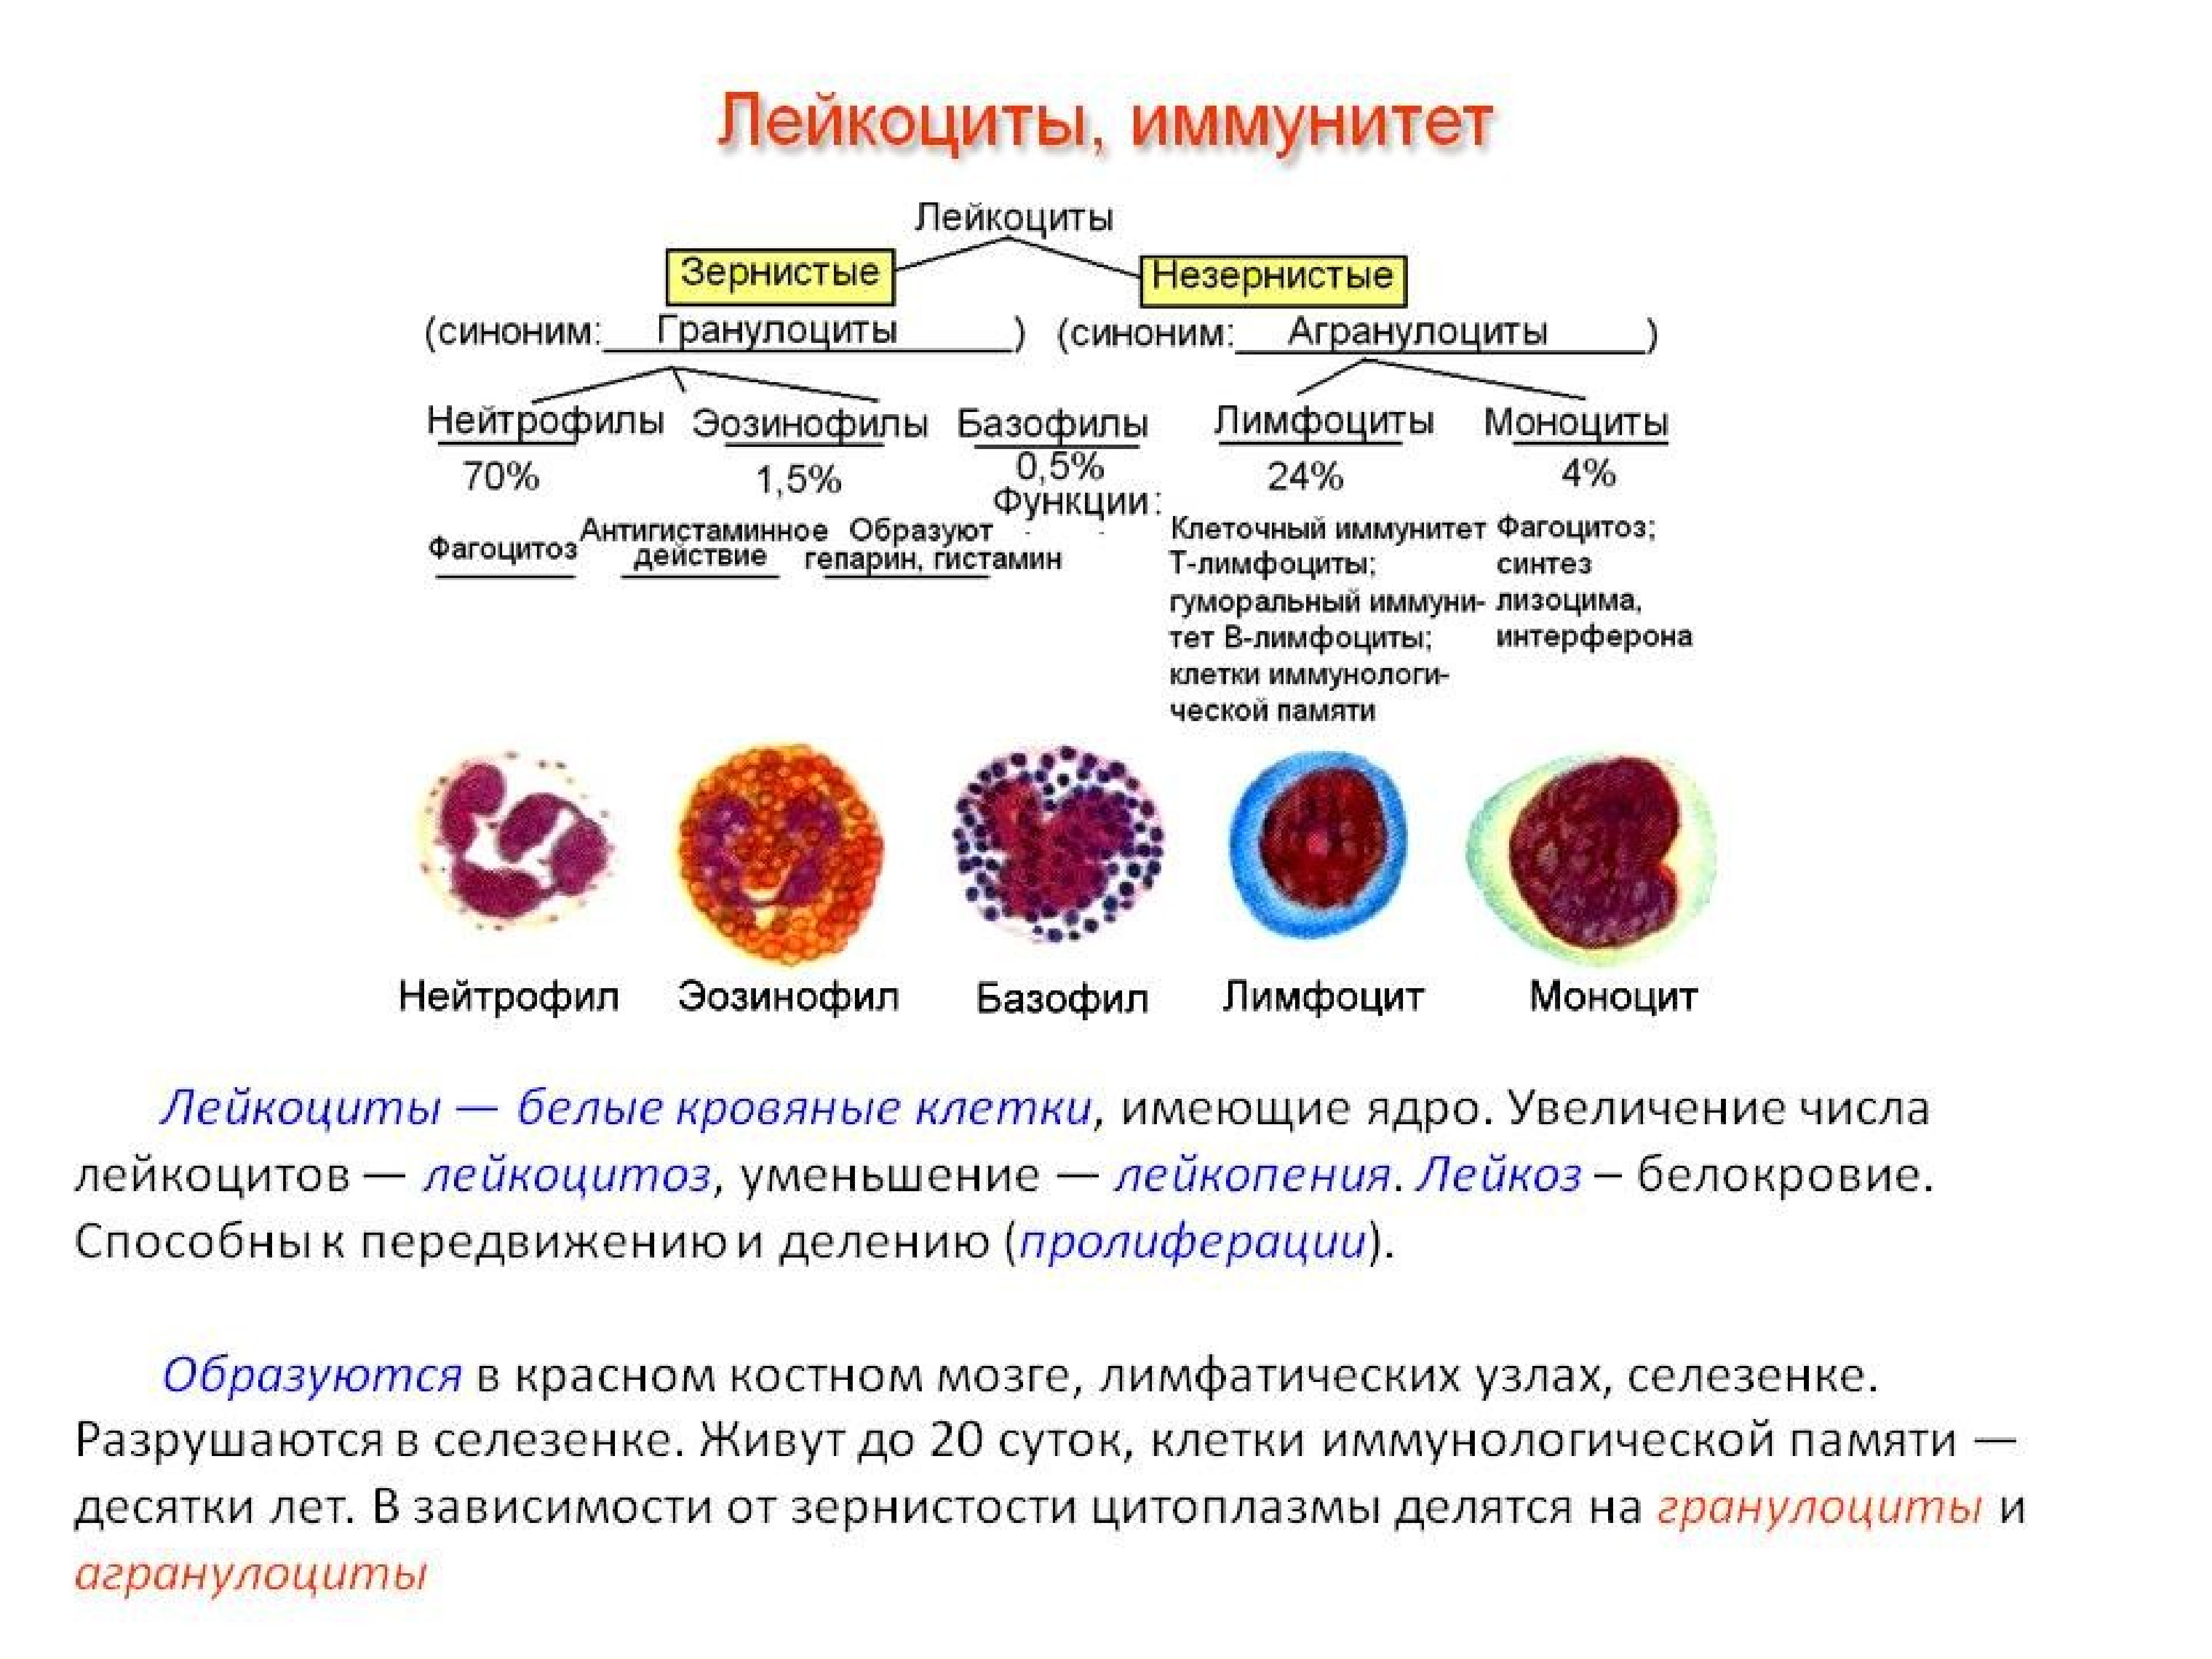 Деление клеток крови. Функции нейтрофилы лимфоциты. Форменные элементы крови костный мозг. Клетки крови моноциты лимфоциты гранулоциты. Строение нейтрофилов крови.